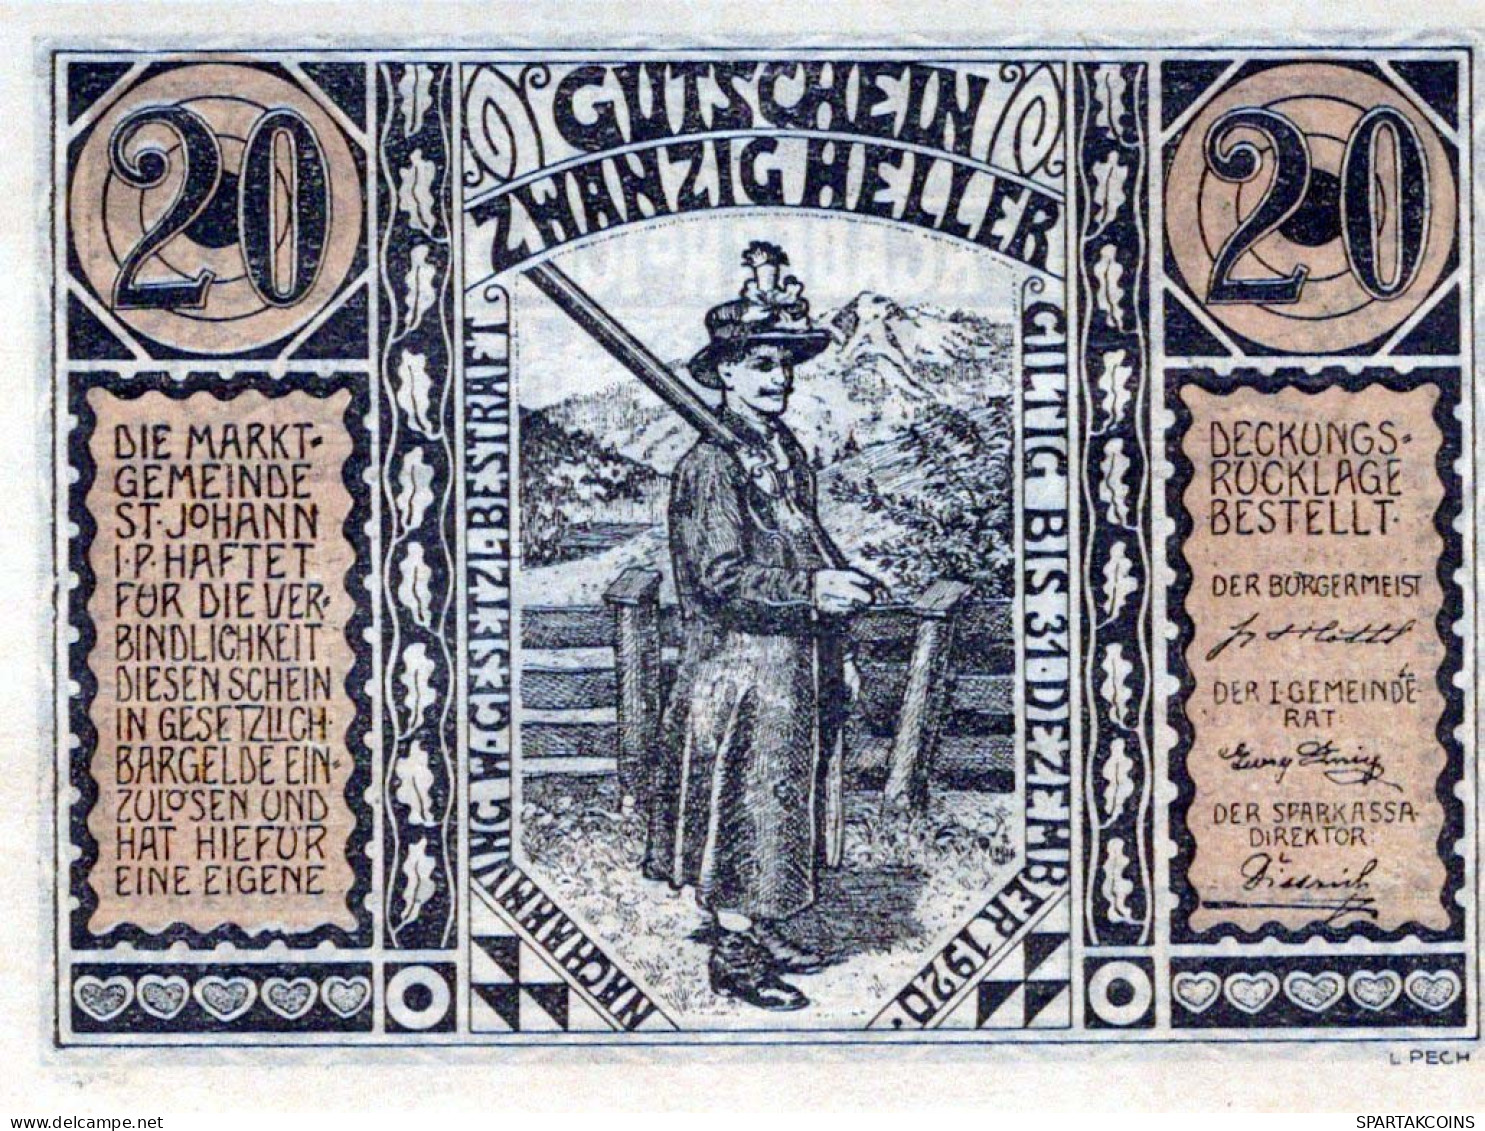 20 HELLER 1920 Stadt SANKT JOHANN IM PONGAU Salzburg Österreich Notgeld Papiergeld Banknote #PG680 - Lokale Ausgaben